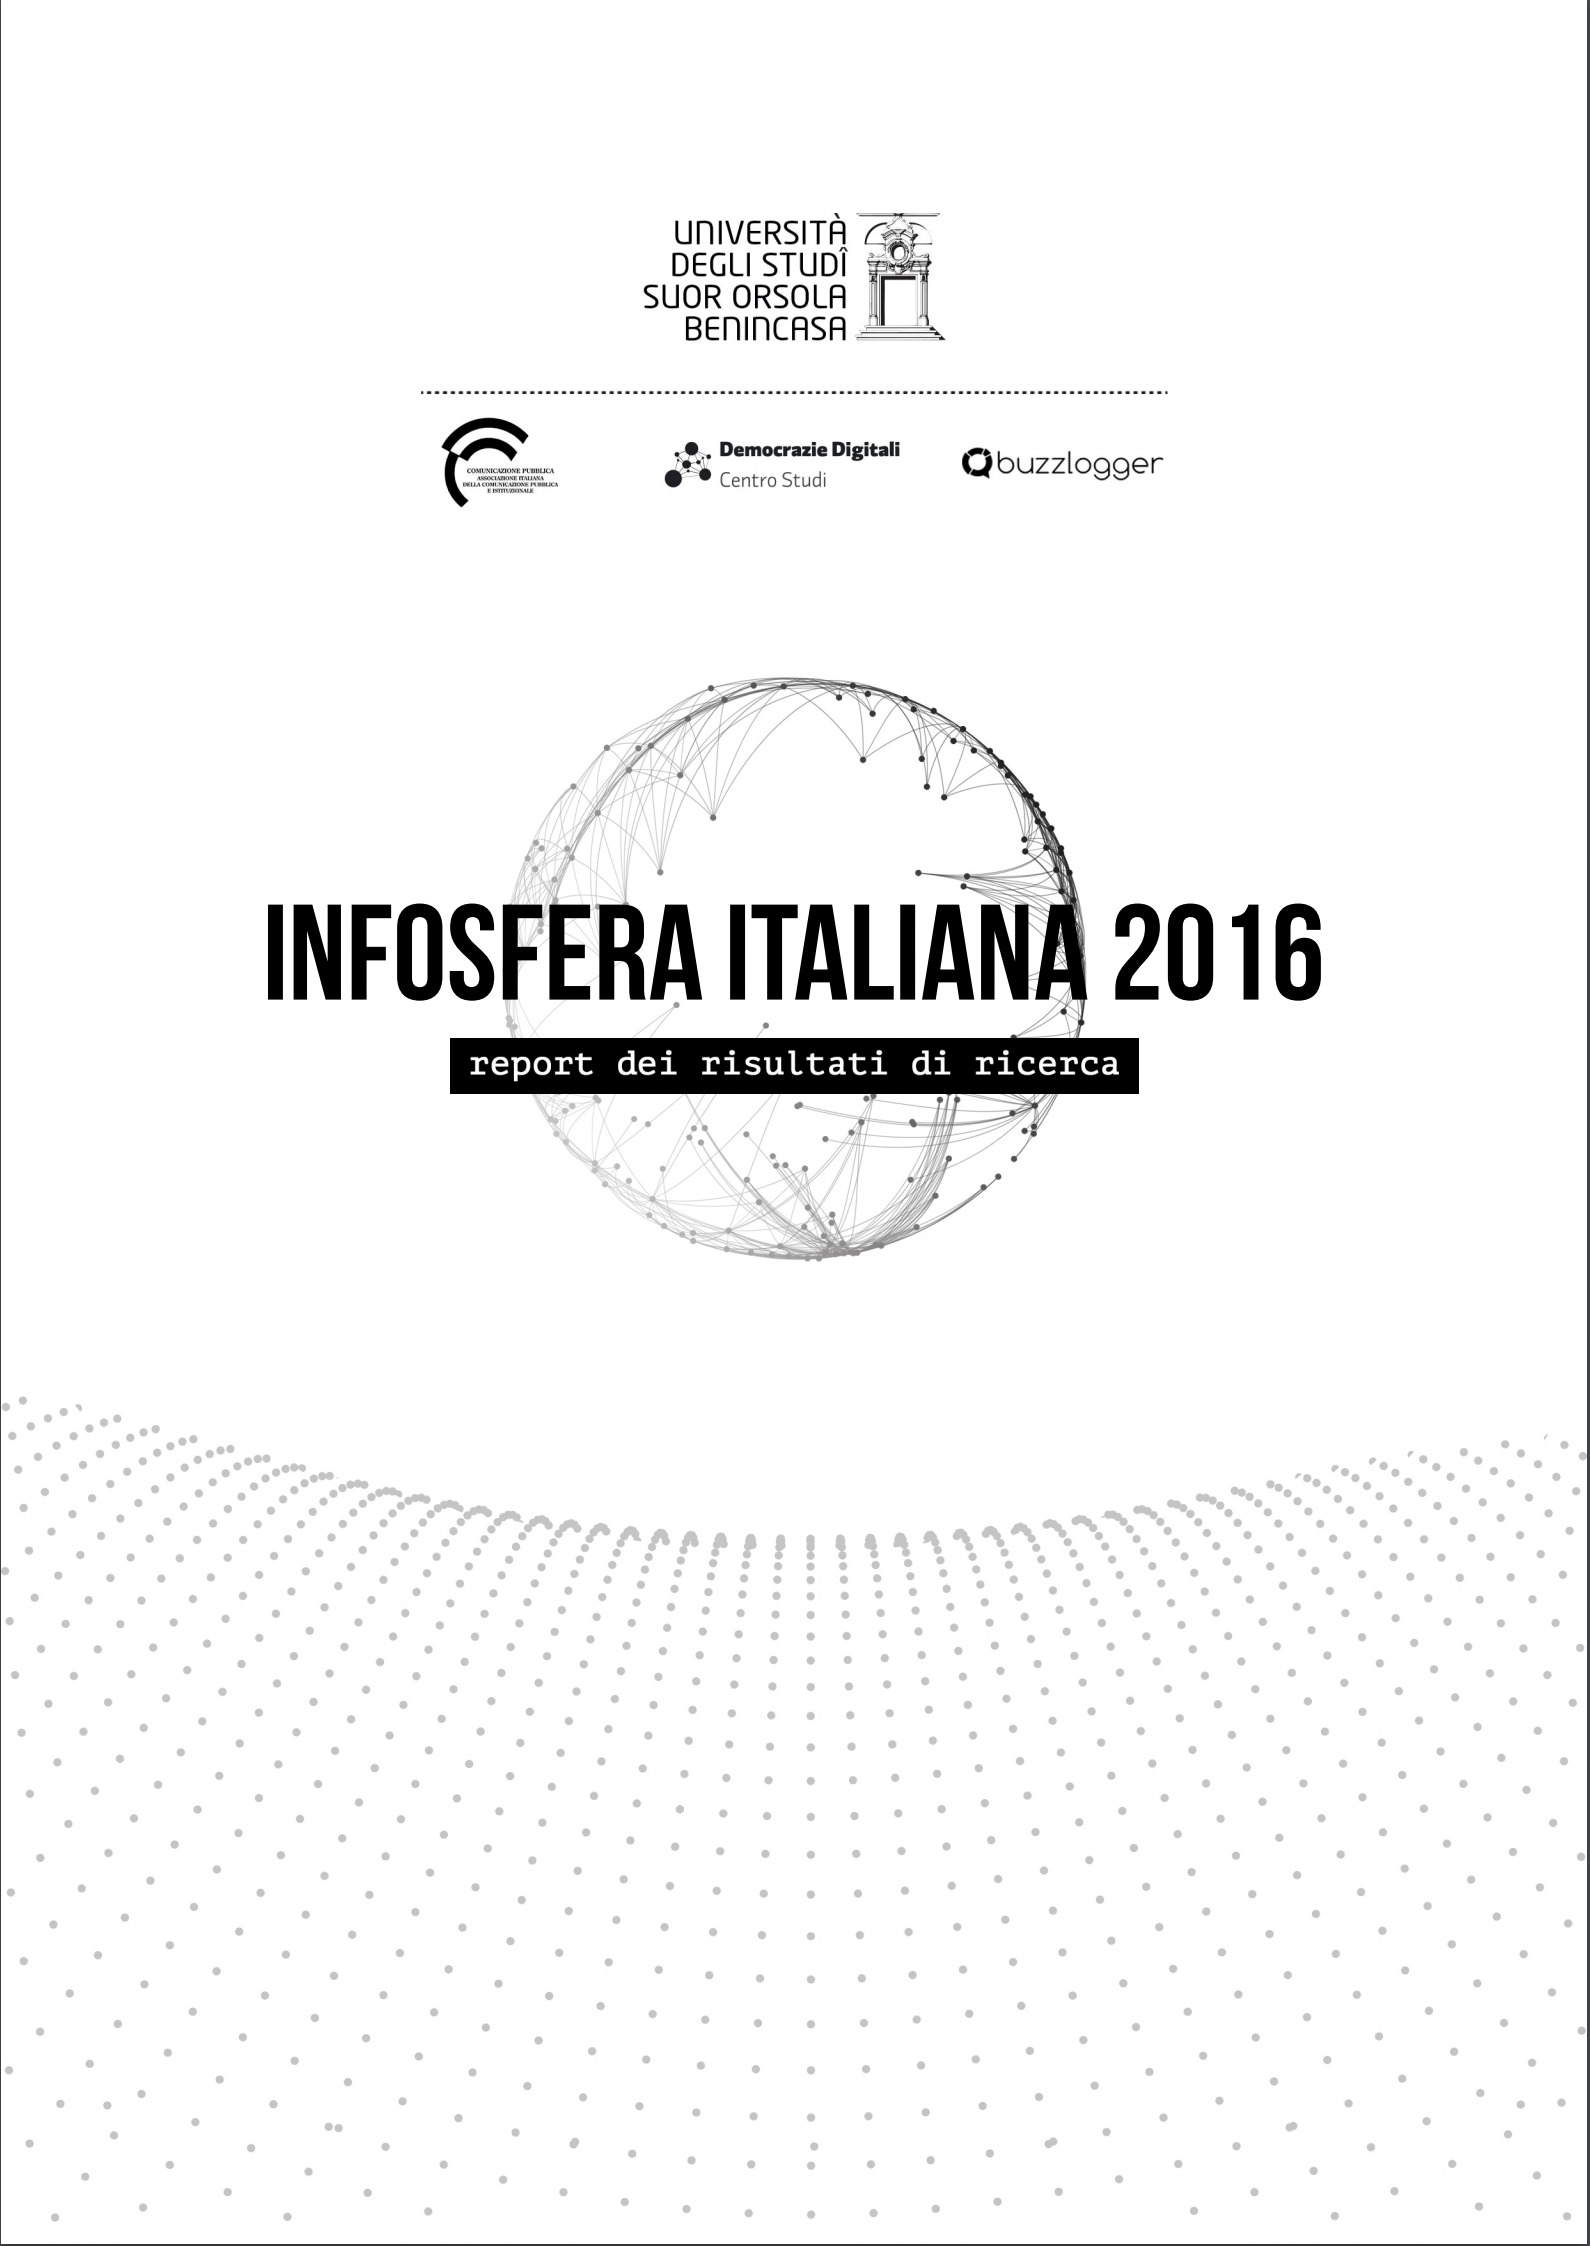 Infosfera 2016